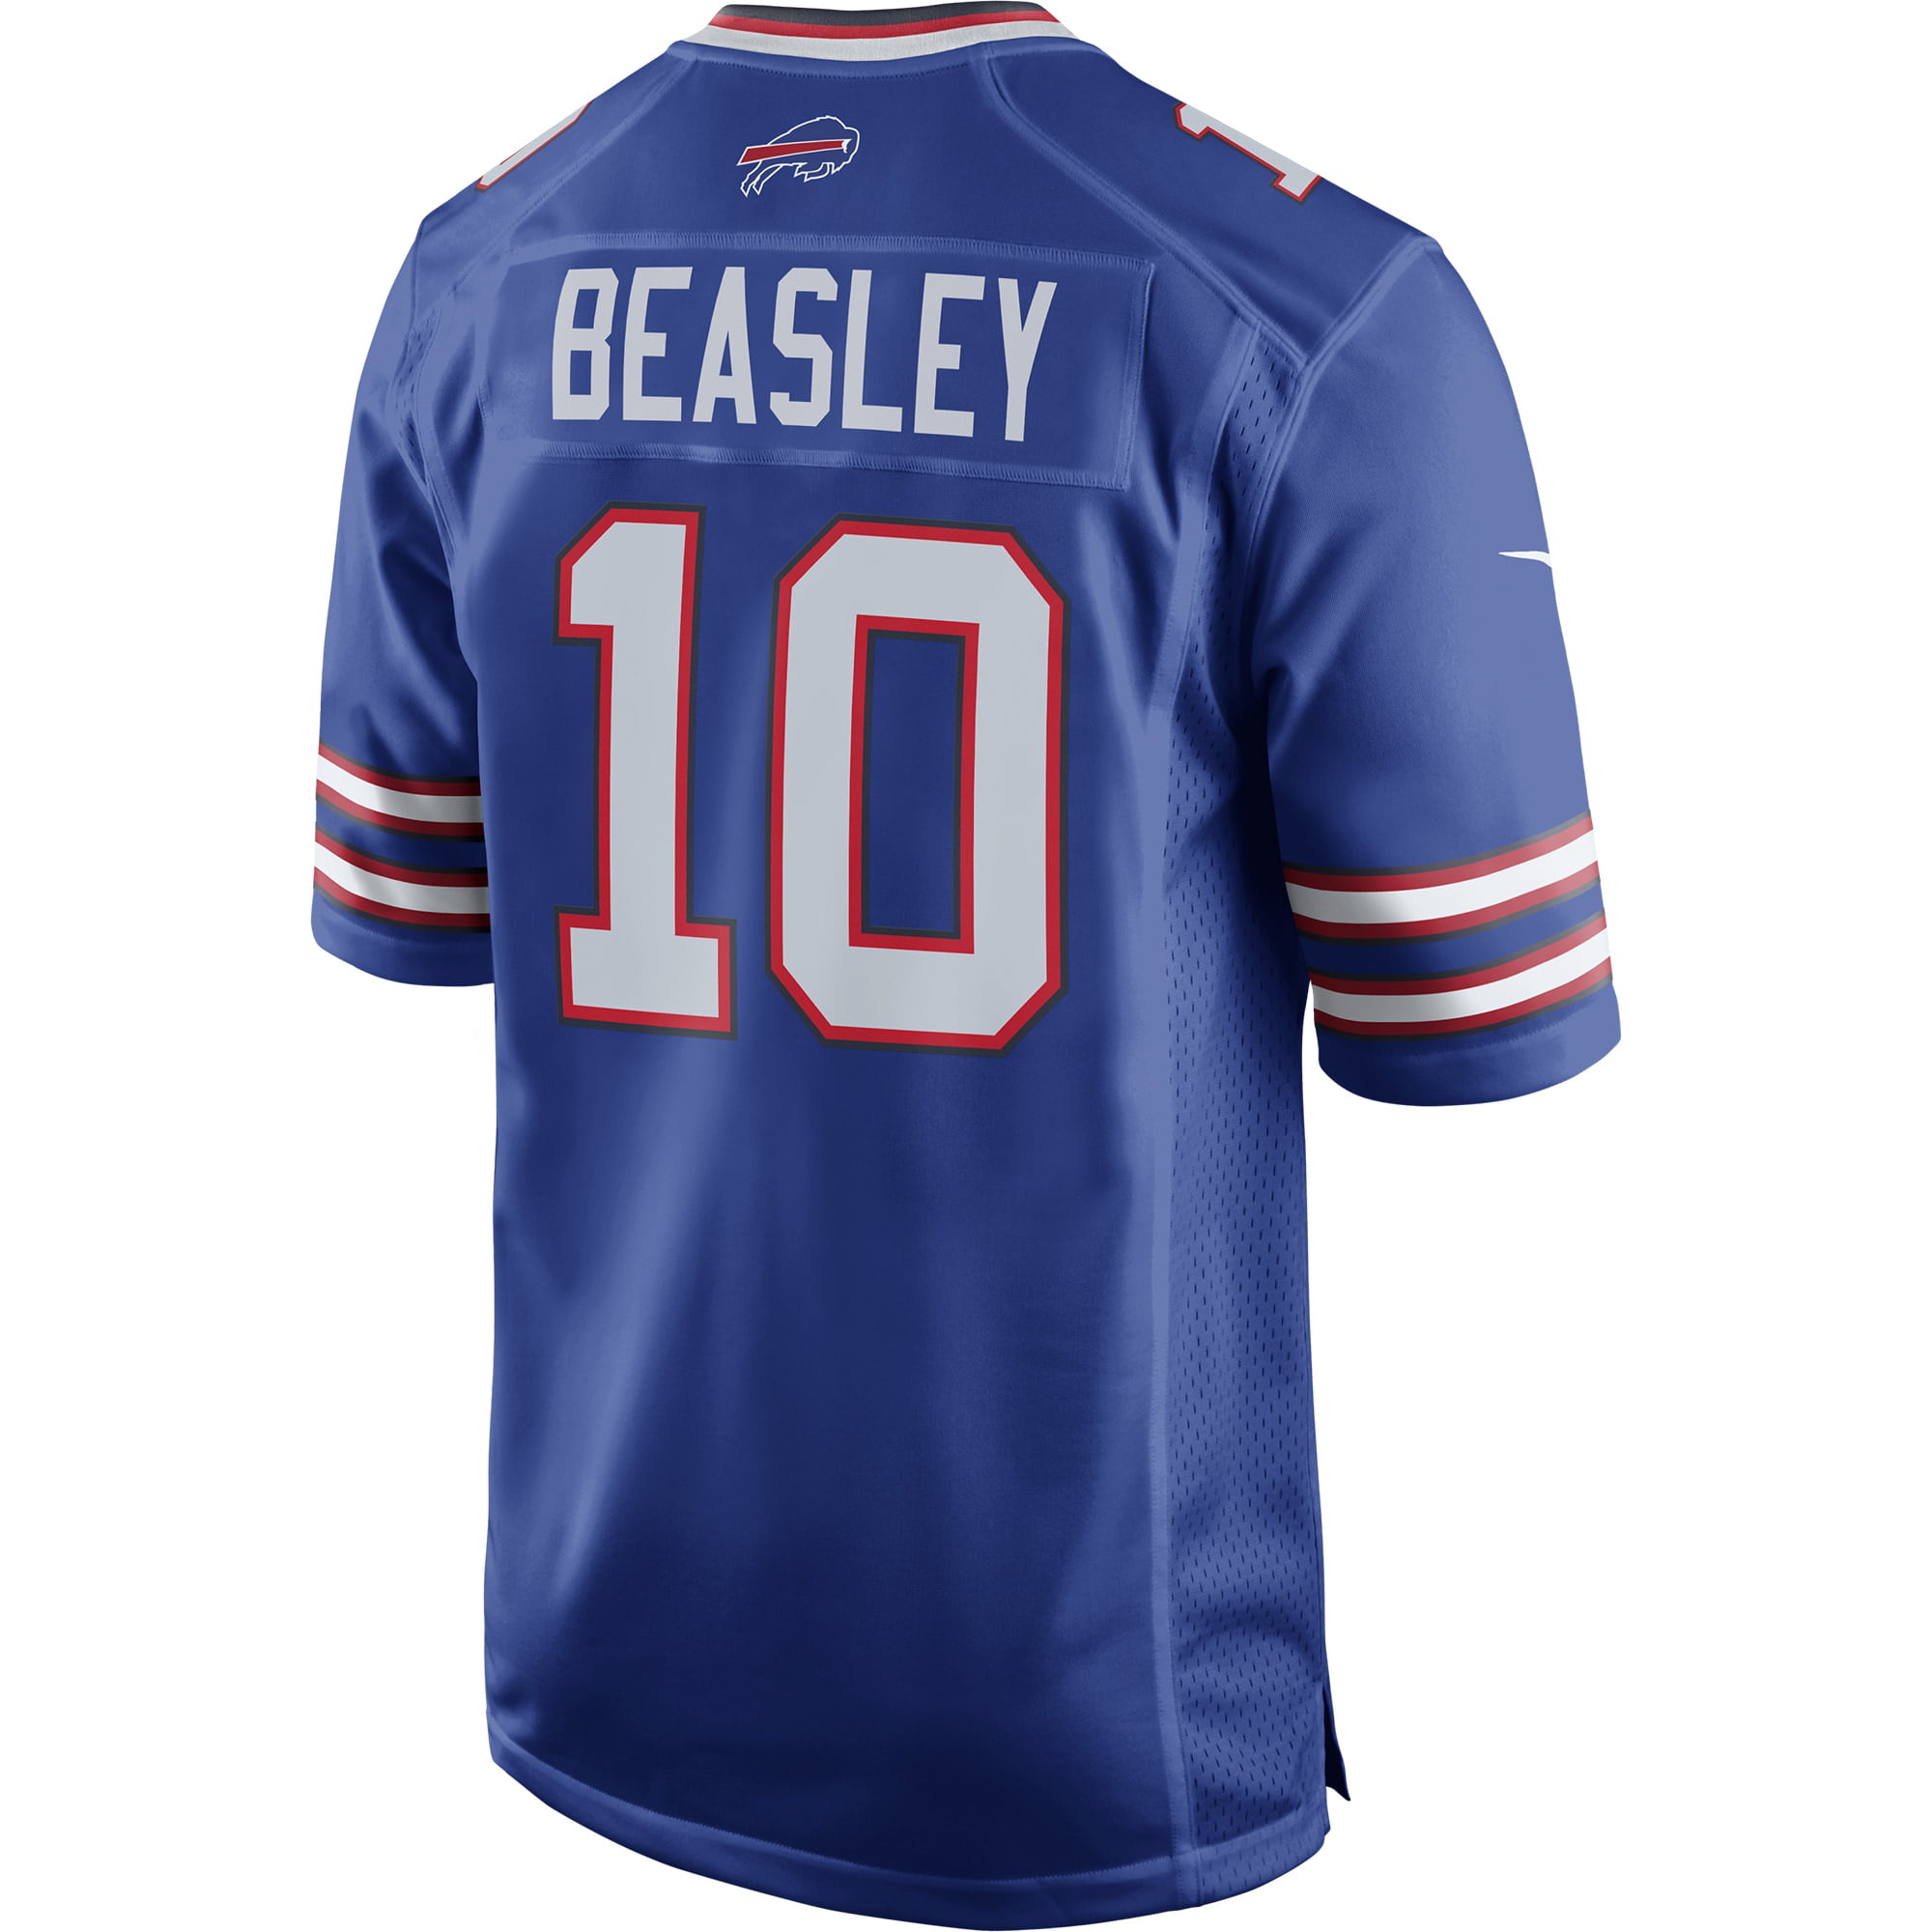 بوت ابيض نسائي Men's Buffalo Bills #11 Cole Beasley Royal Blue 2020 Vapor Untouchable Stitched NFL Nike Limited Jersey بصلة كرتون